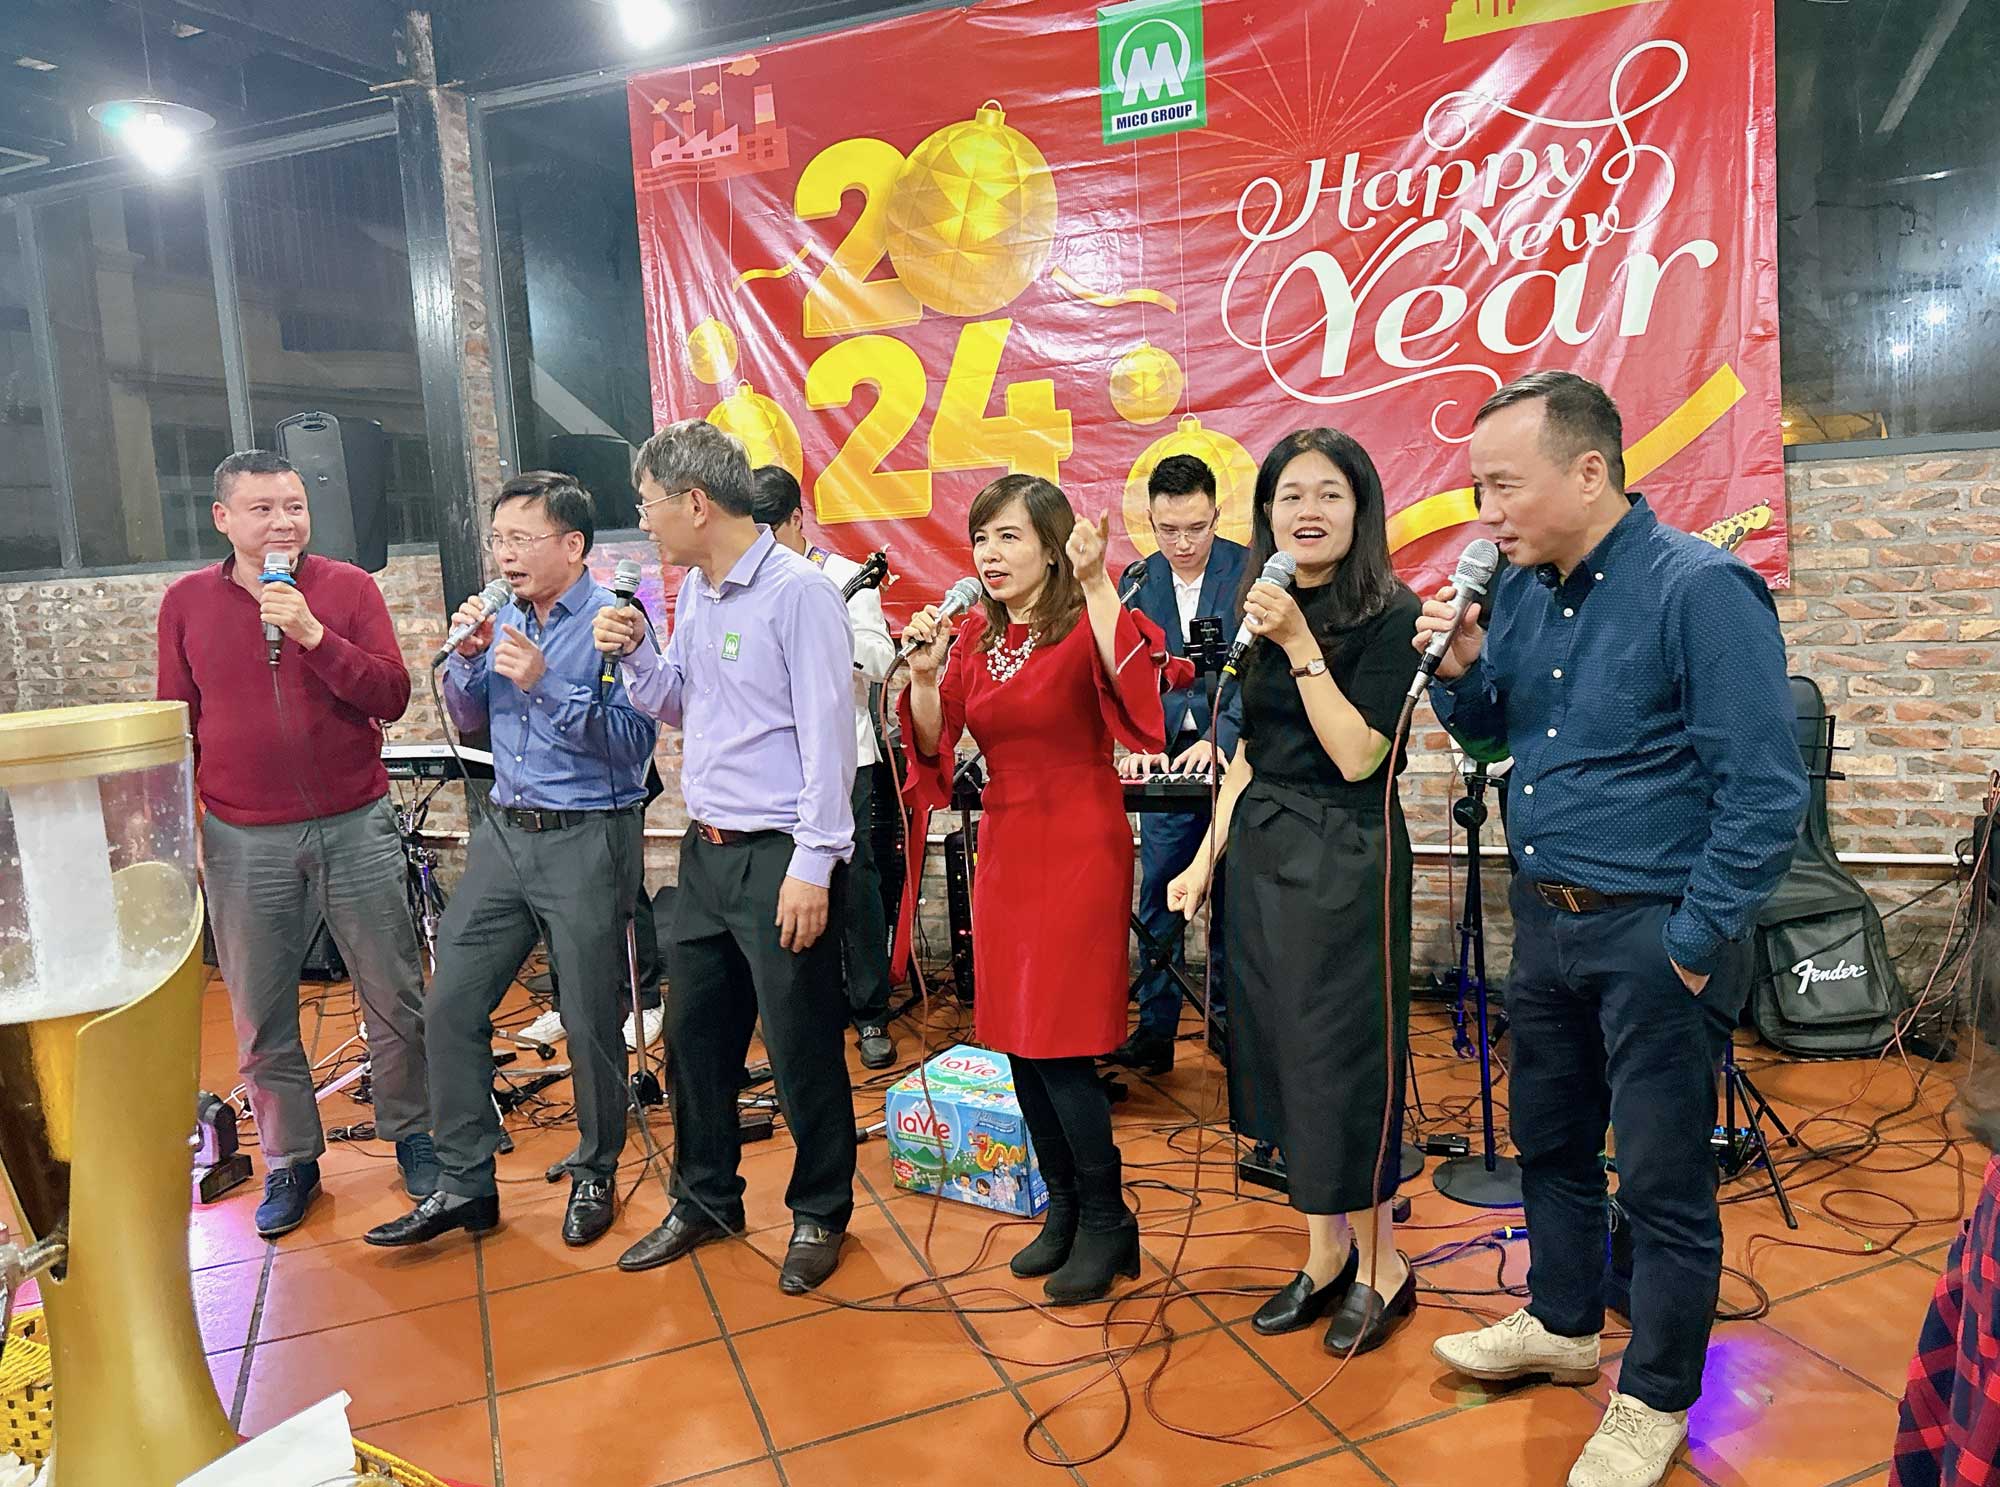 Ban Lãnh đạo MICO GROUP cất cao tiếng hát chào đón năm mới